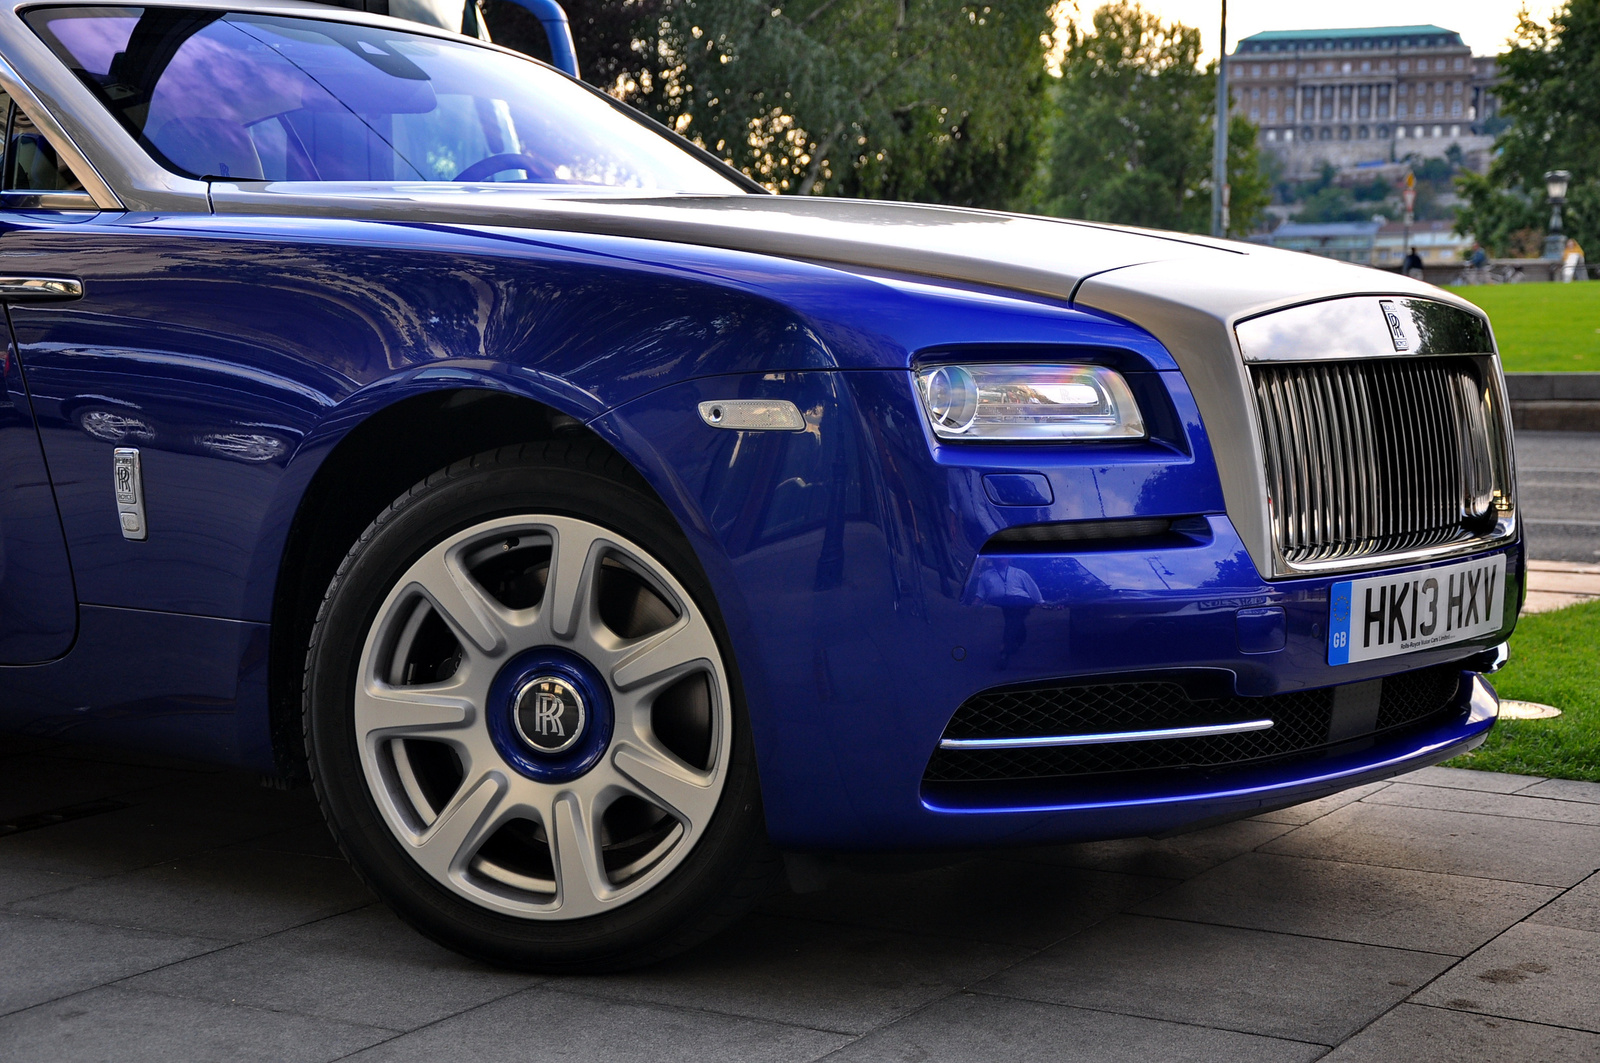 Rolls-Royce Wraith 009